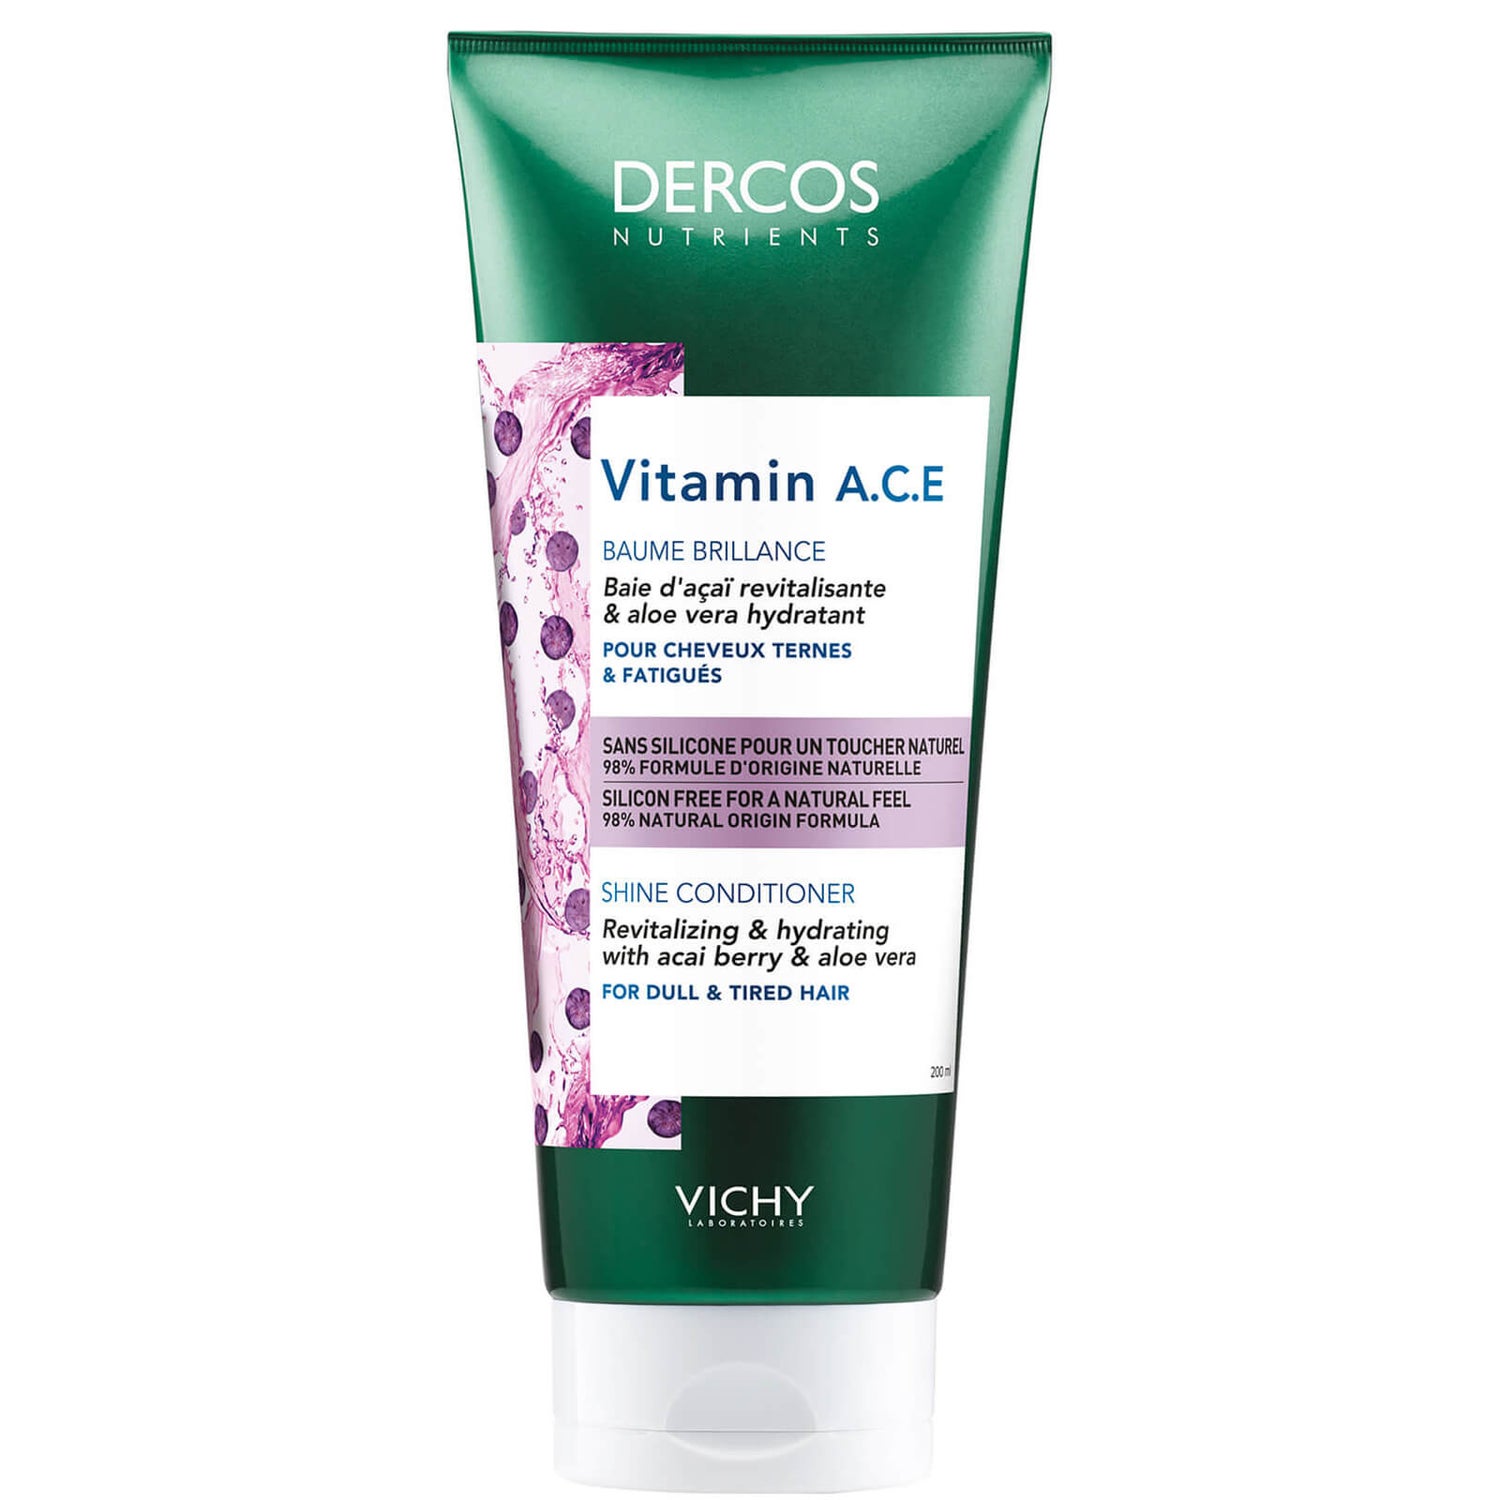 VICHY Dercos Nutrients Vitamin A.C.E Conditioner 200ml